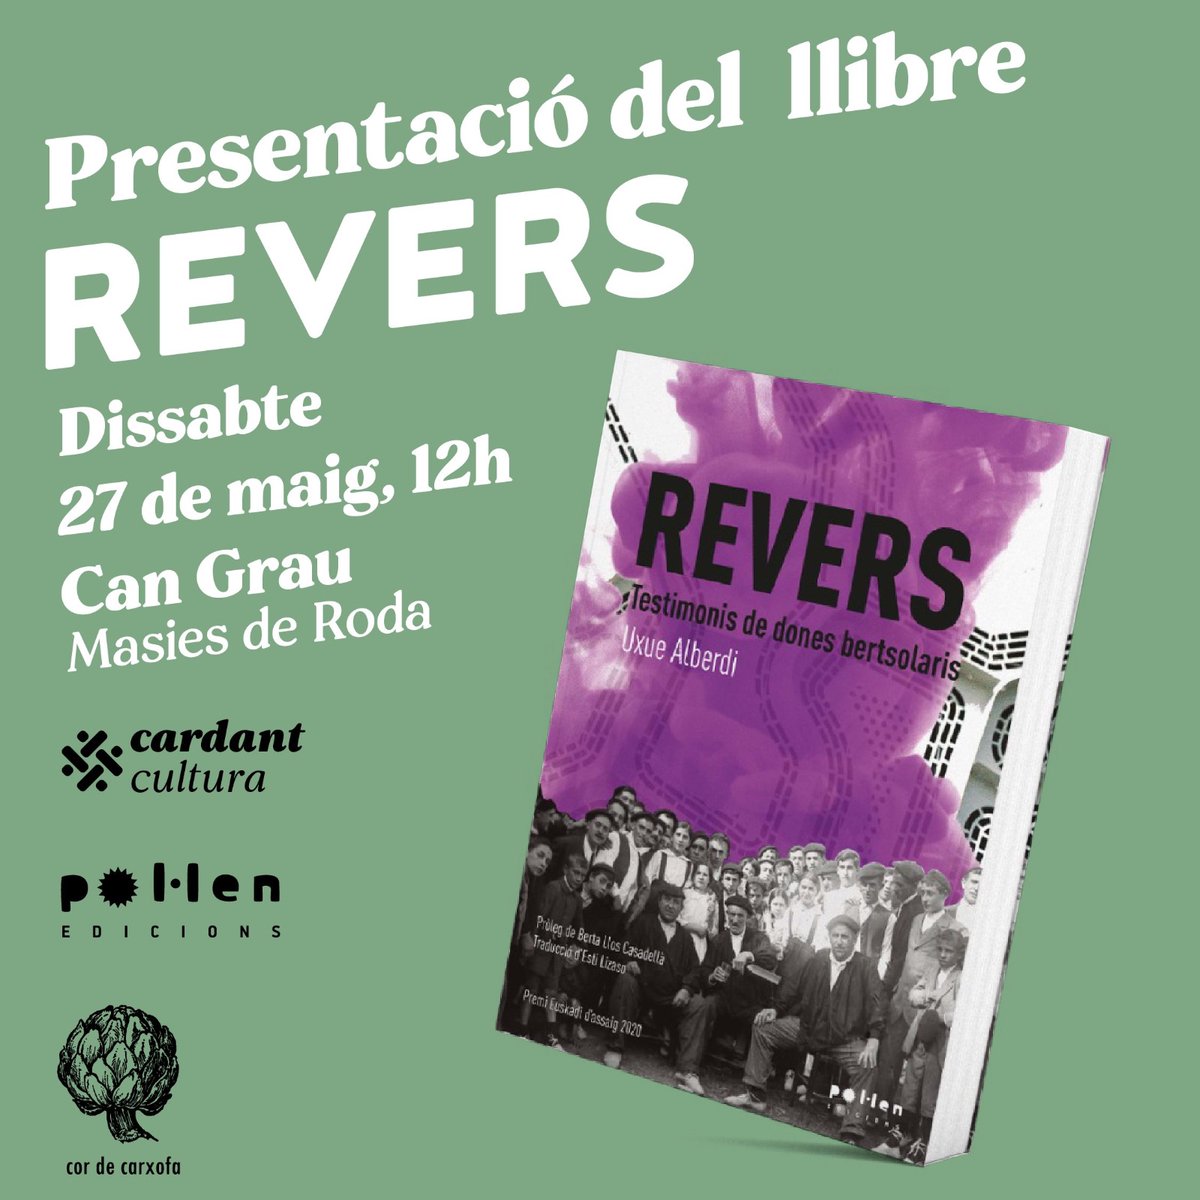 Ens veureu amb @CordeCarxofa a #CanGrau de #MasiesDeRoda presentant el llibre Revers de @pol_lenedicions